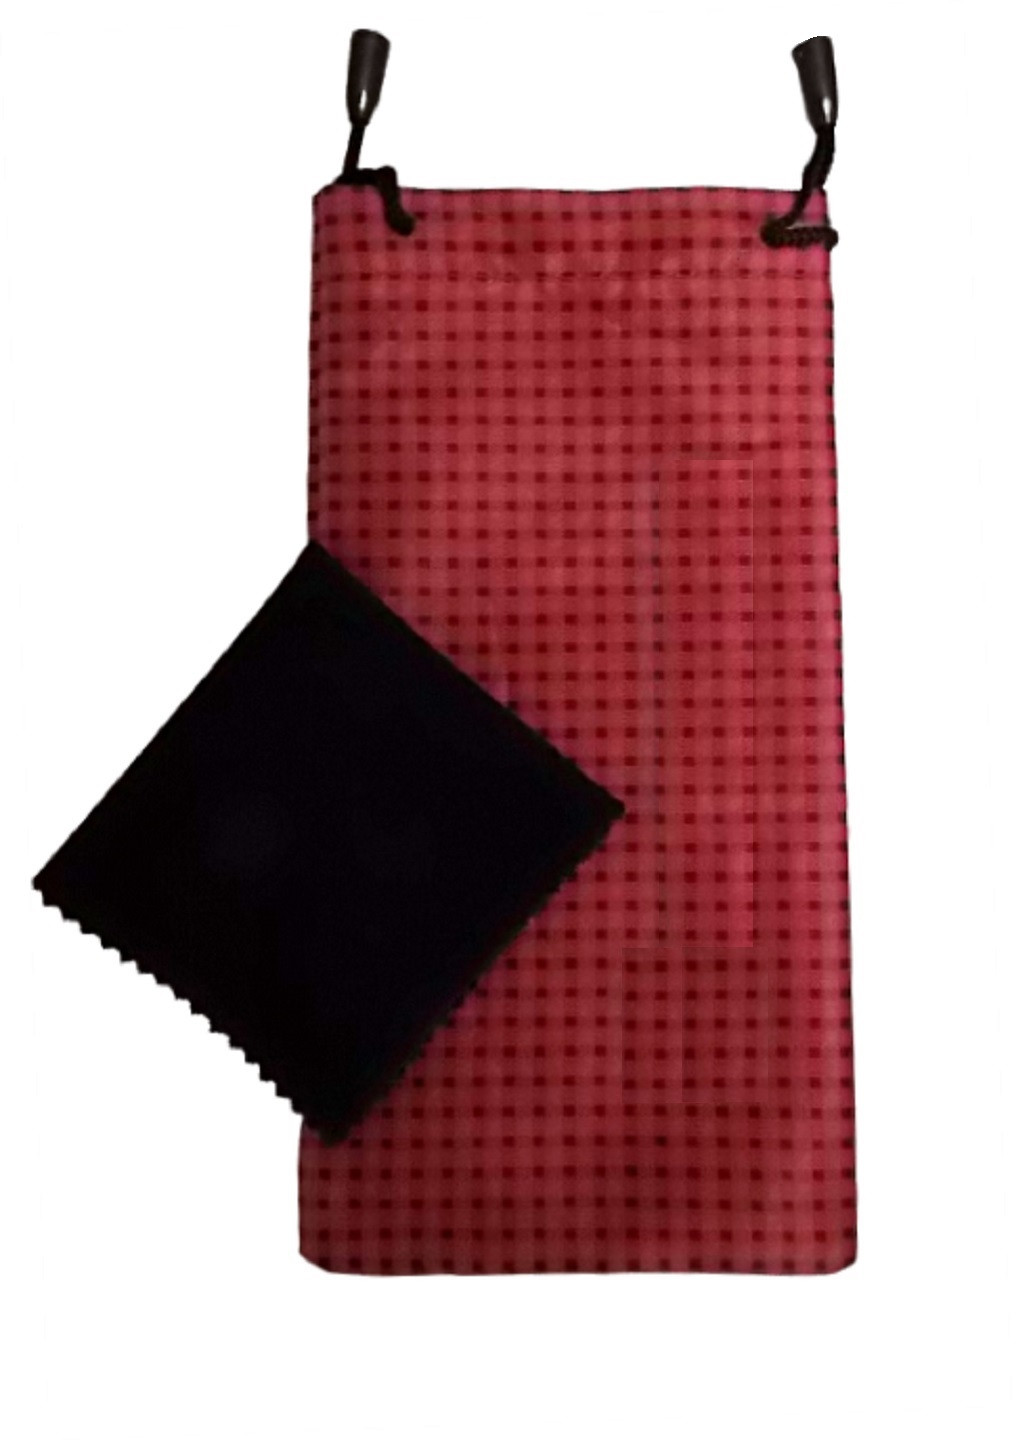 Мешочек с салфеткой для очков A&Co. мешочек клетка красный текстиль